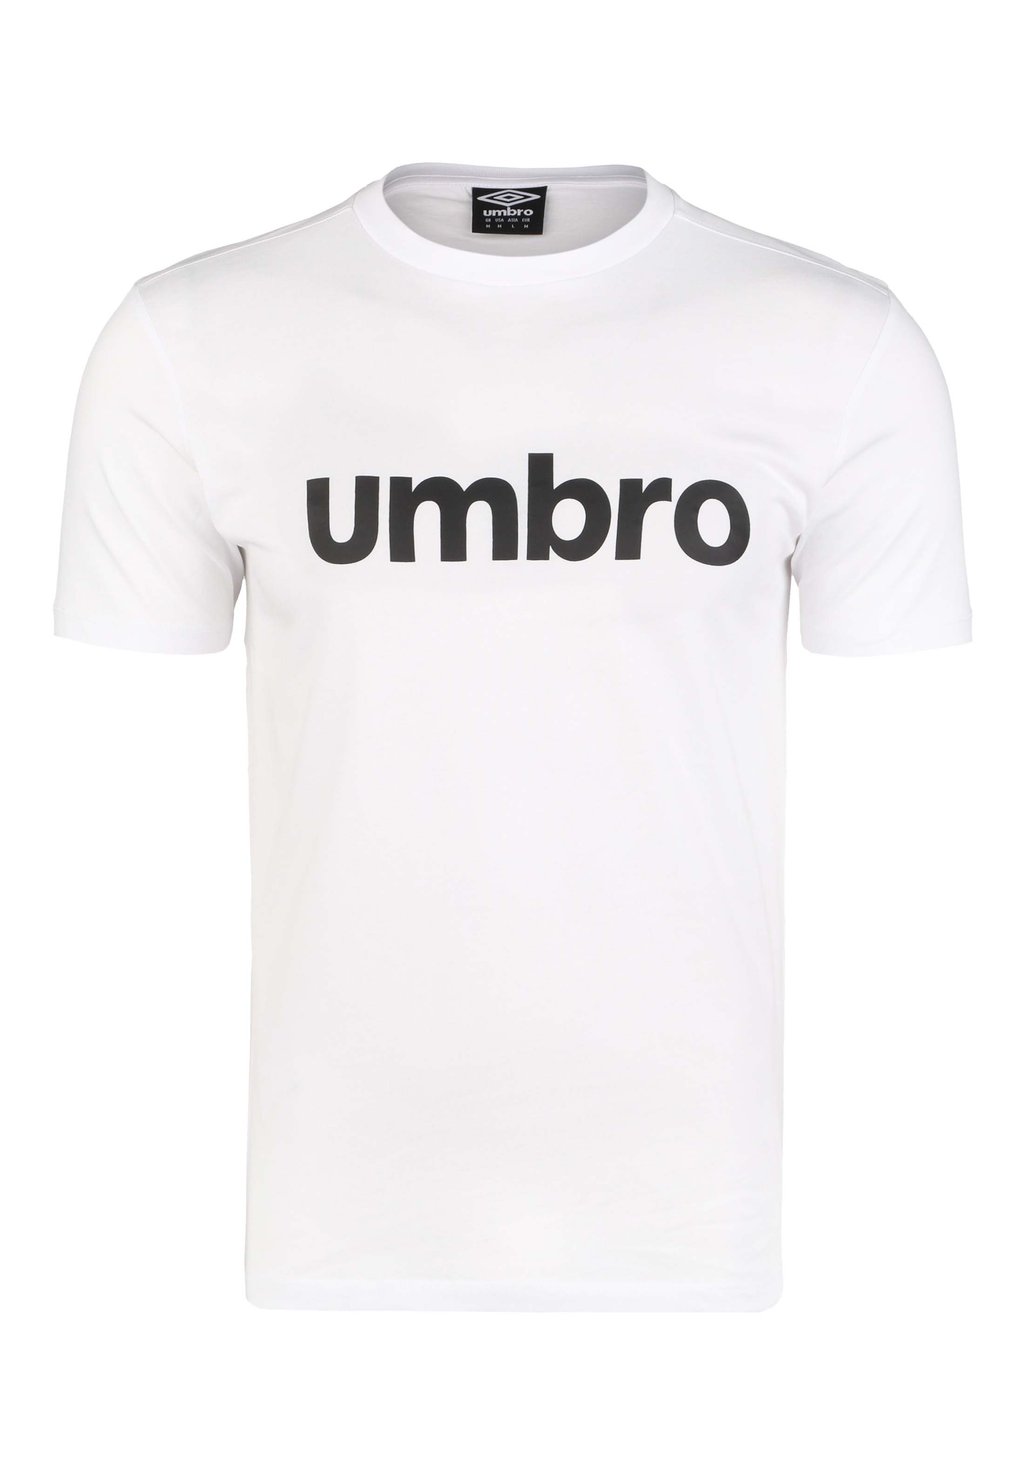 Футболка с принтом LINEAR LOGO GRAPHIC TEE Umbro, цвет brilliant white / black umbro fw linear logo graphic